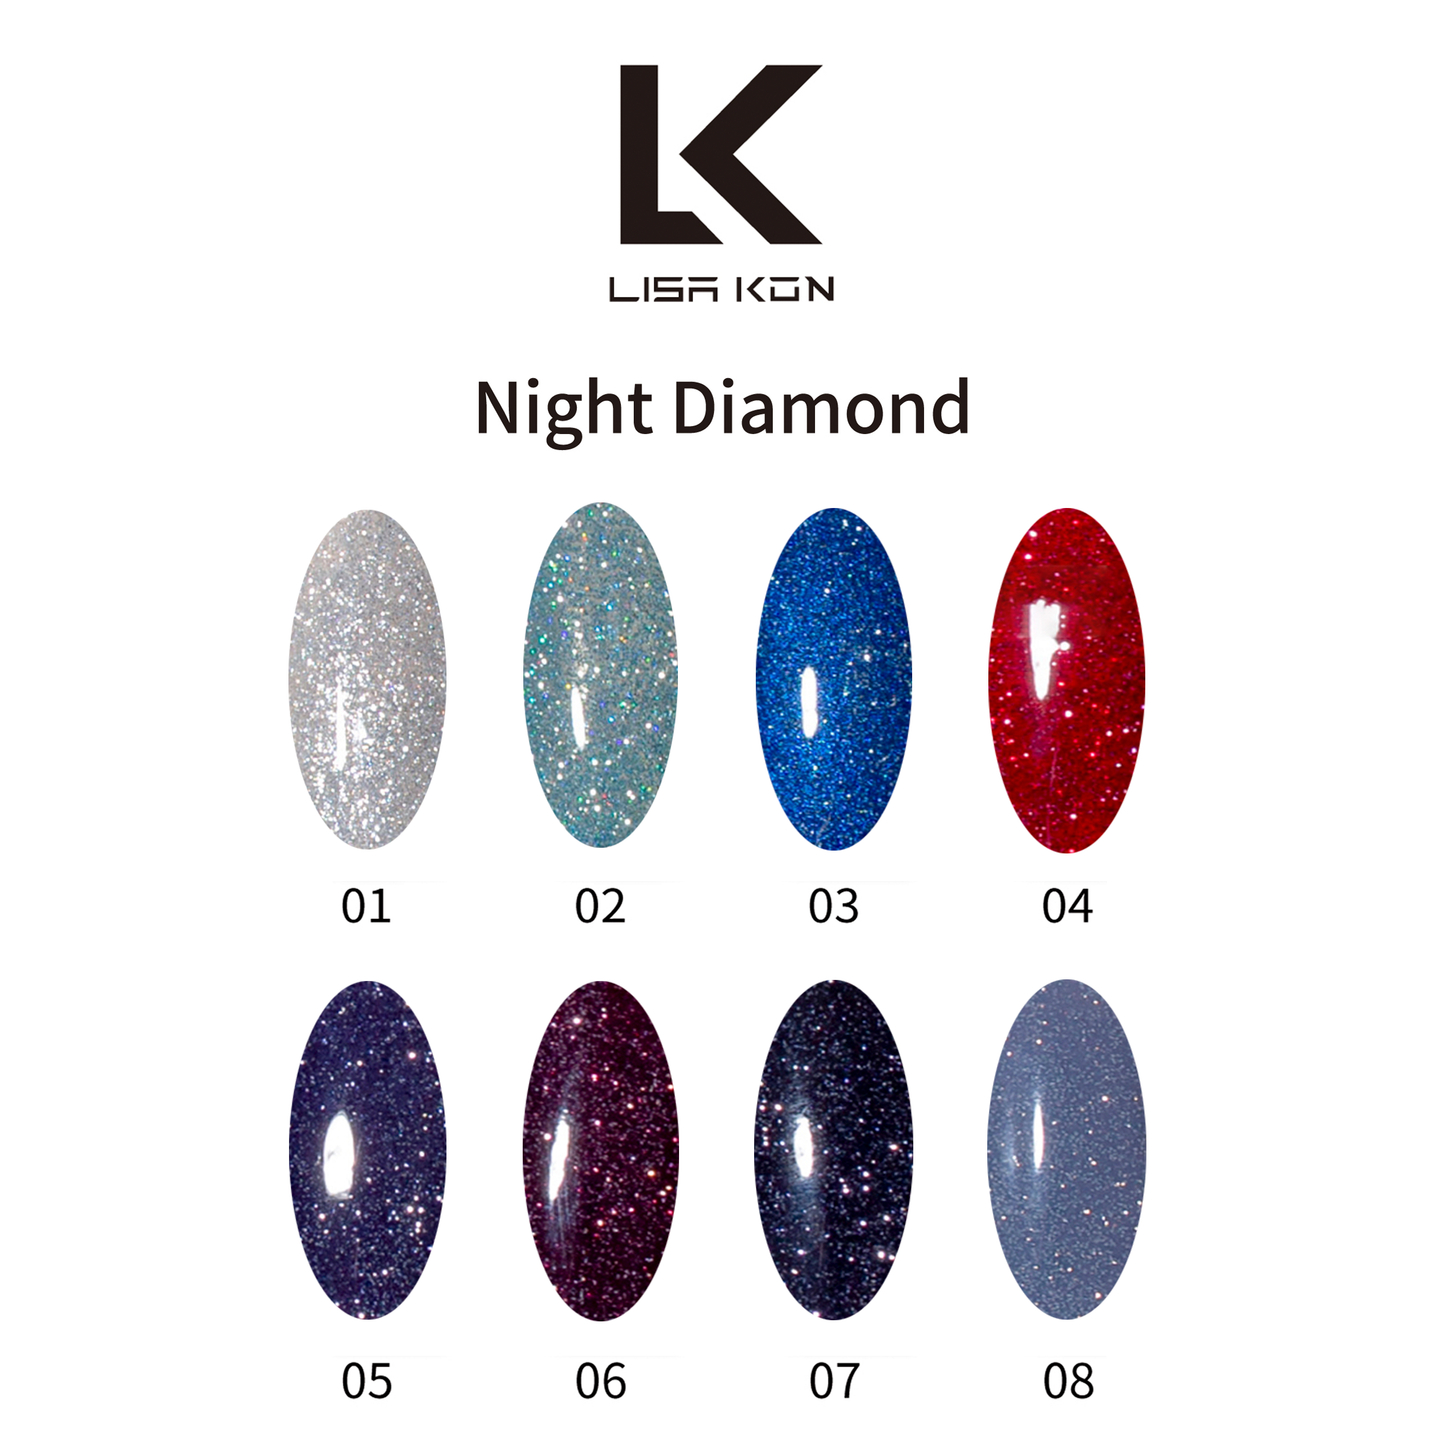 Colección de diamantes nocturnos reflectantes